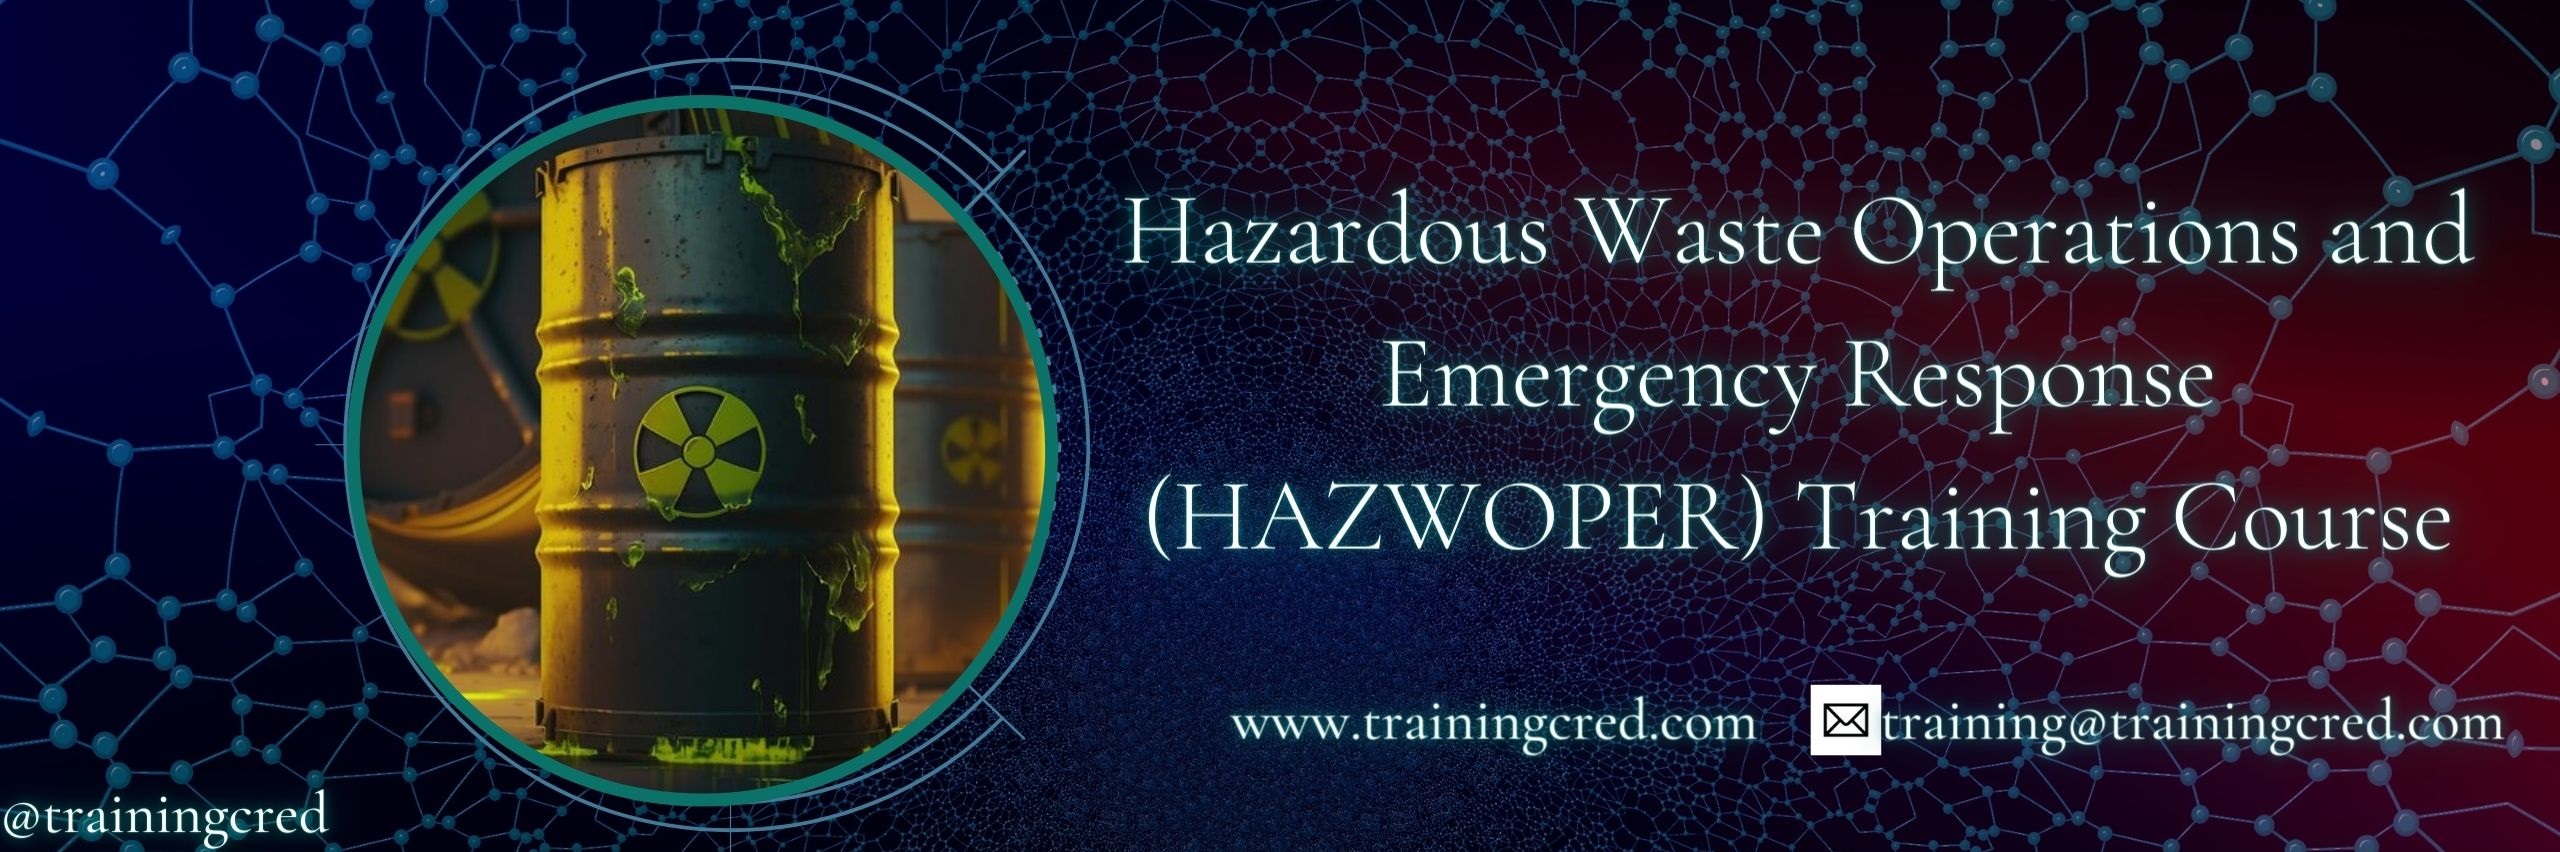 Hazardous Waste Operations and Emergency Response (HAZWOPER) Training